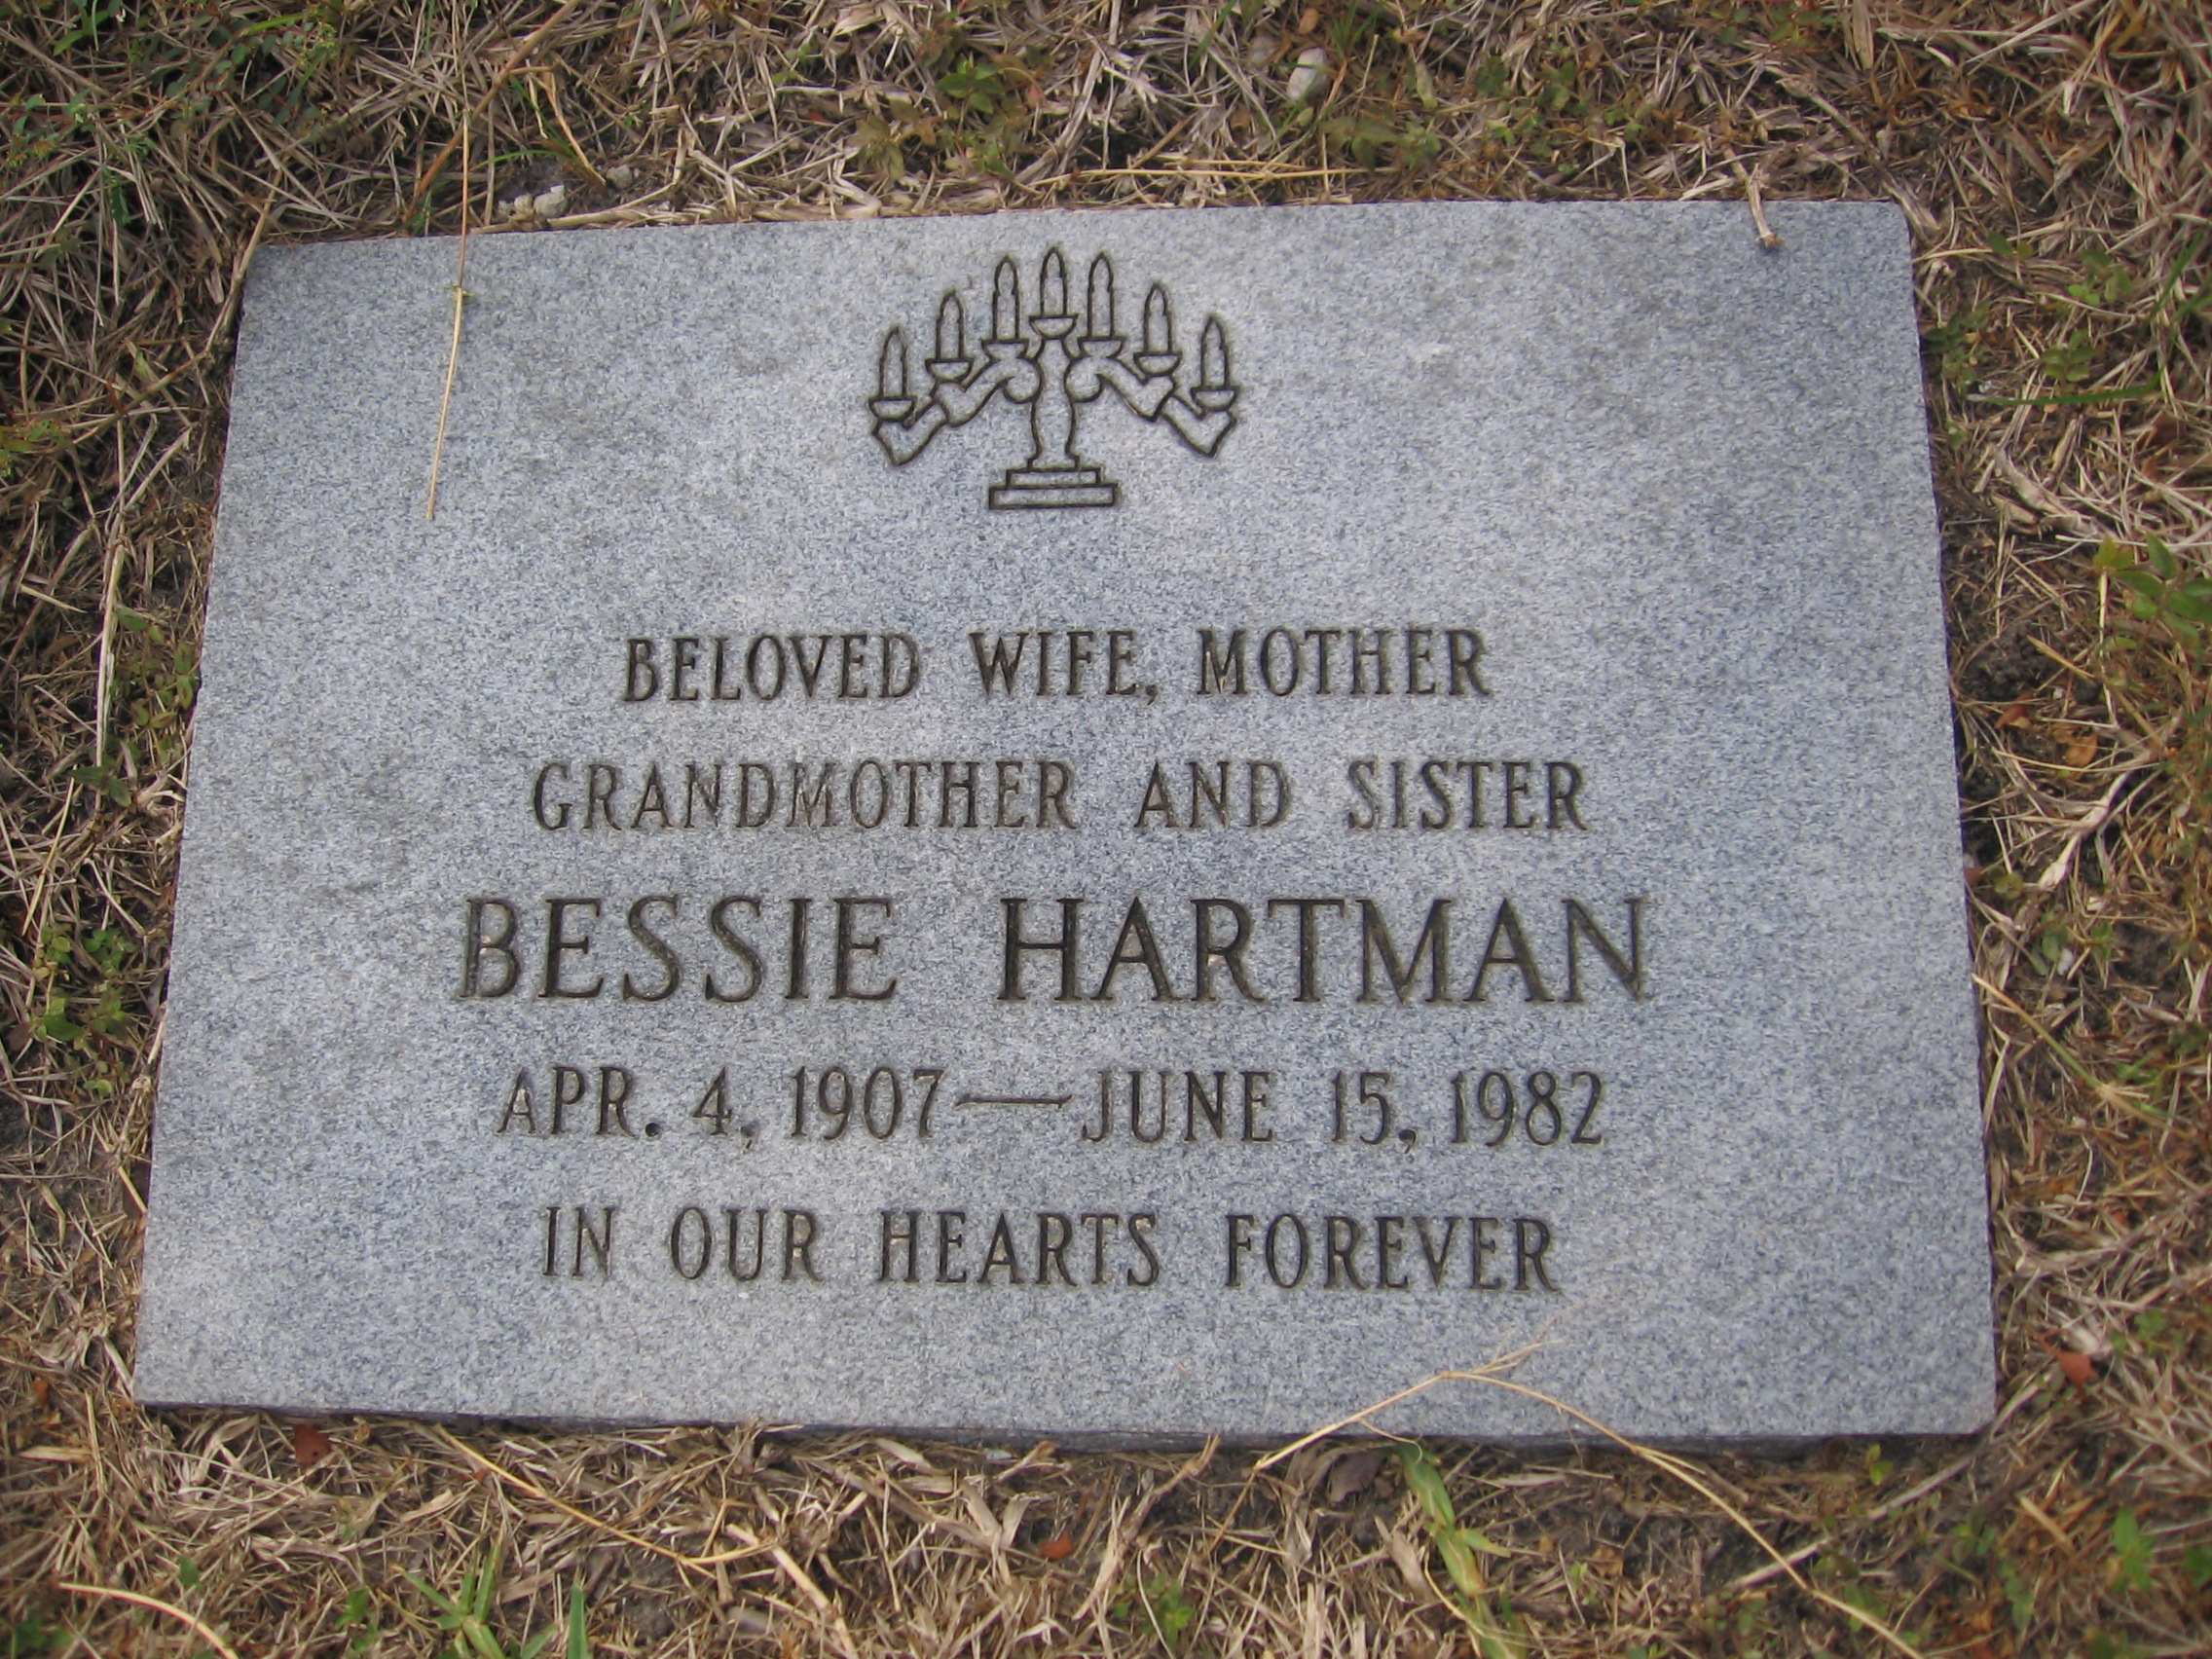 Bessie Hartman